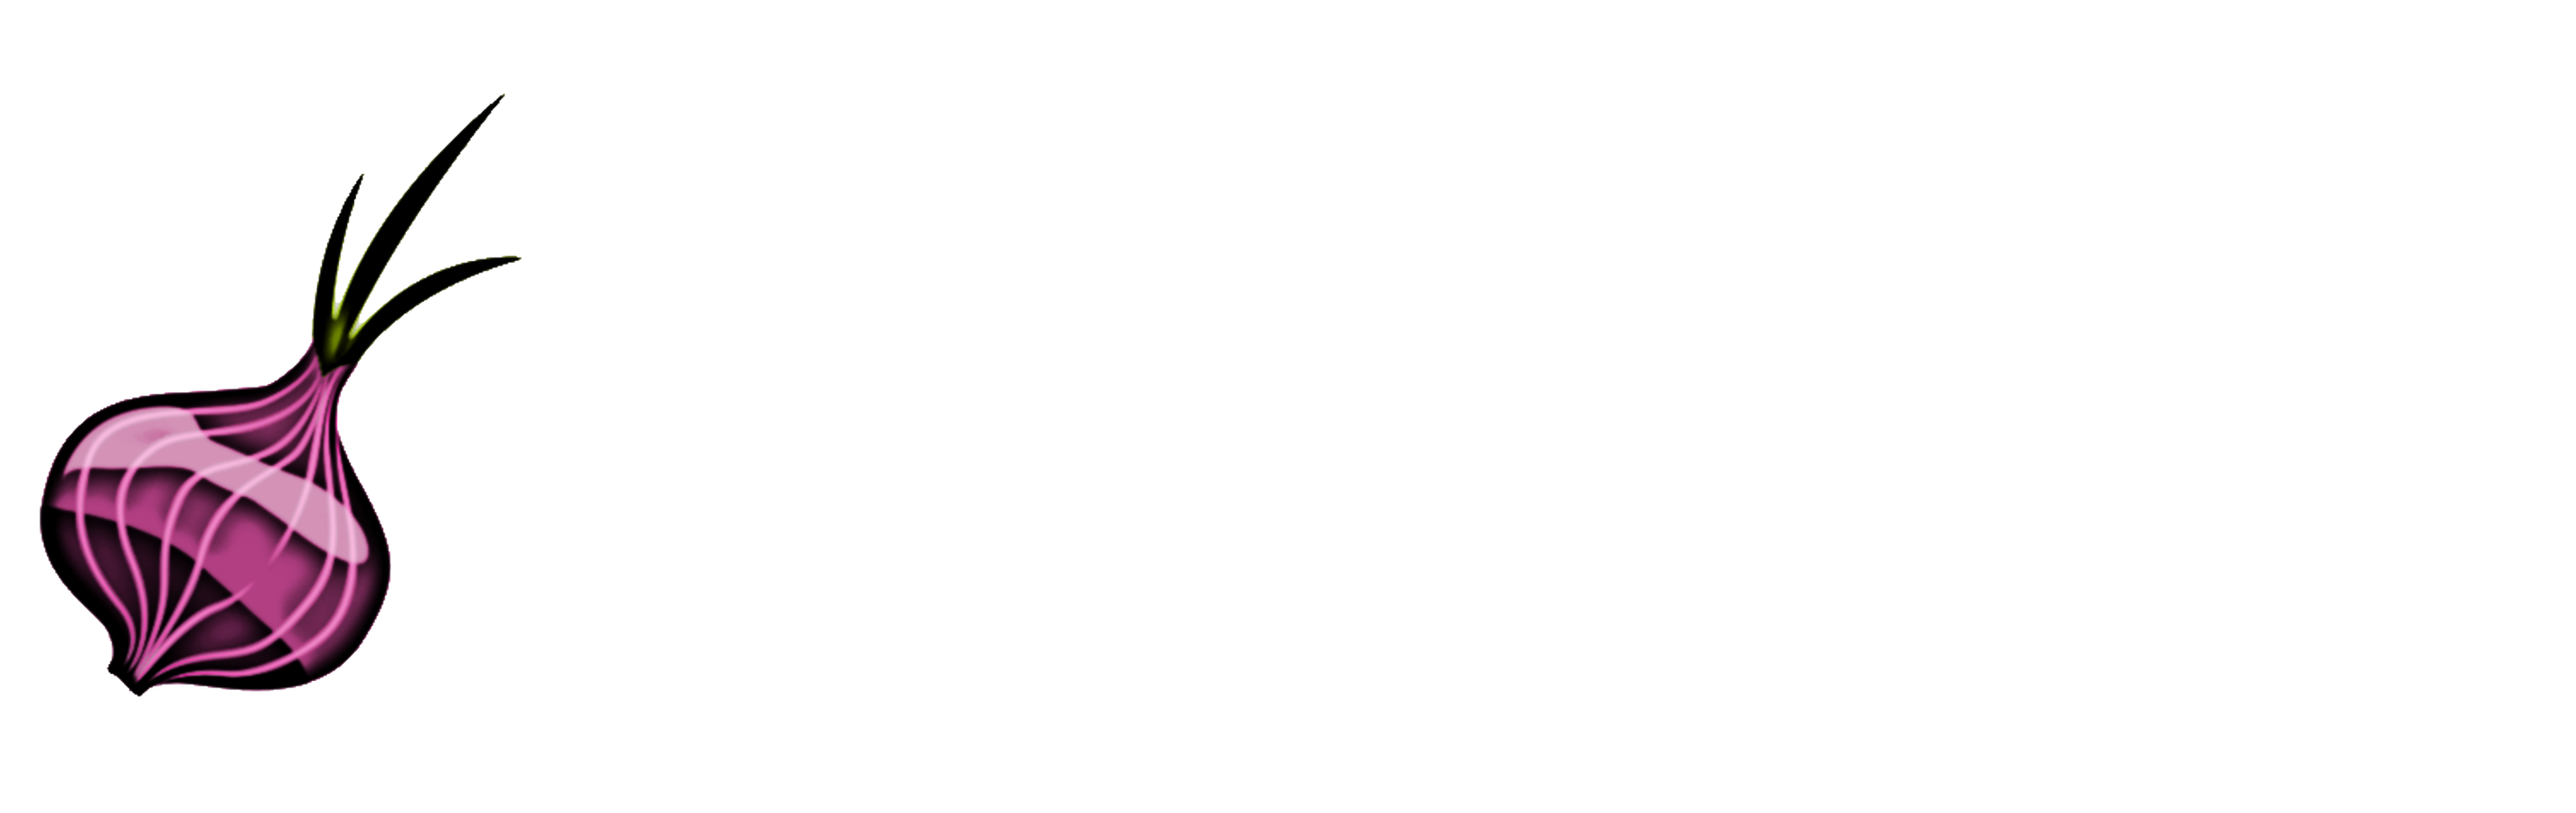 ChinskaCebula_logo